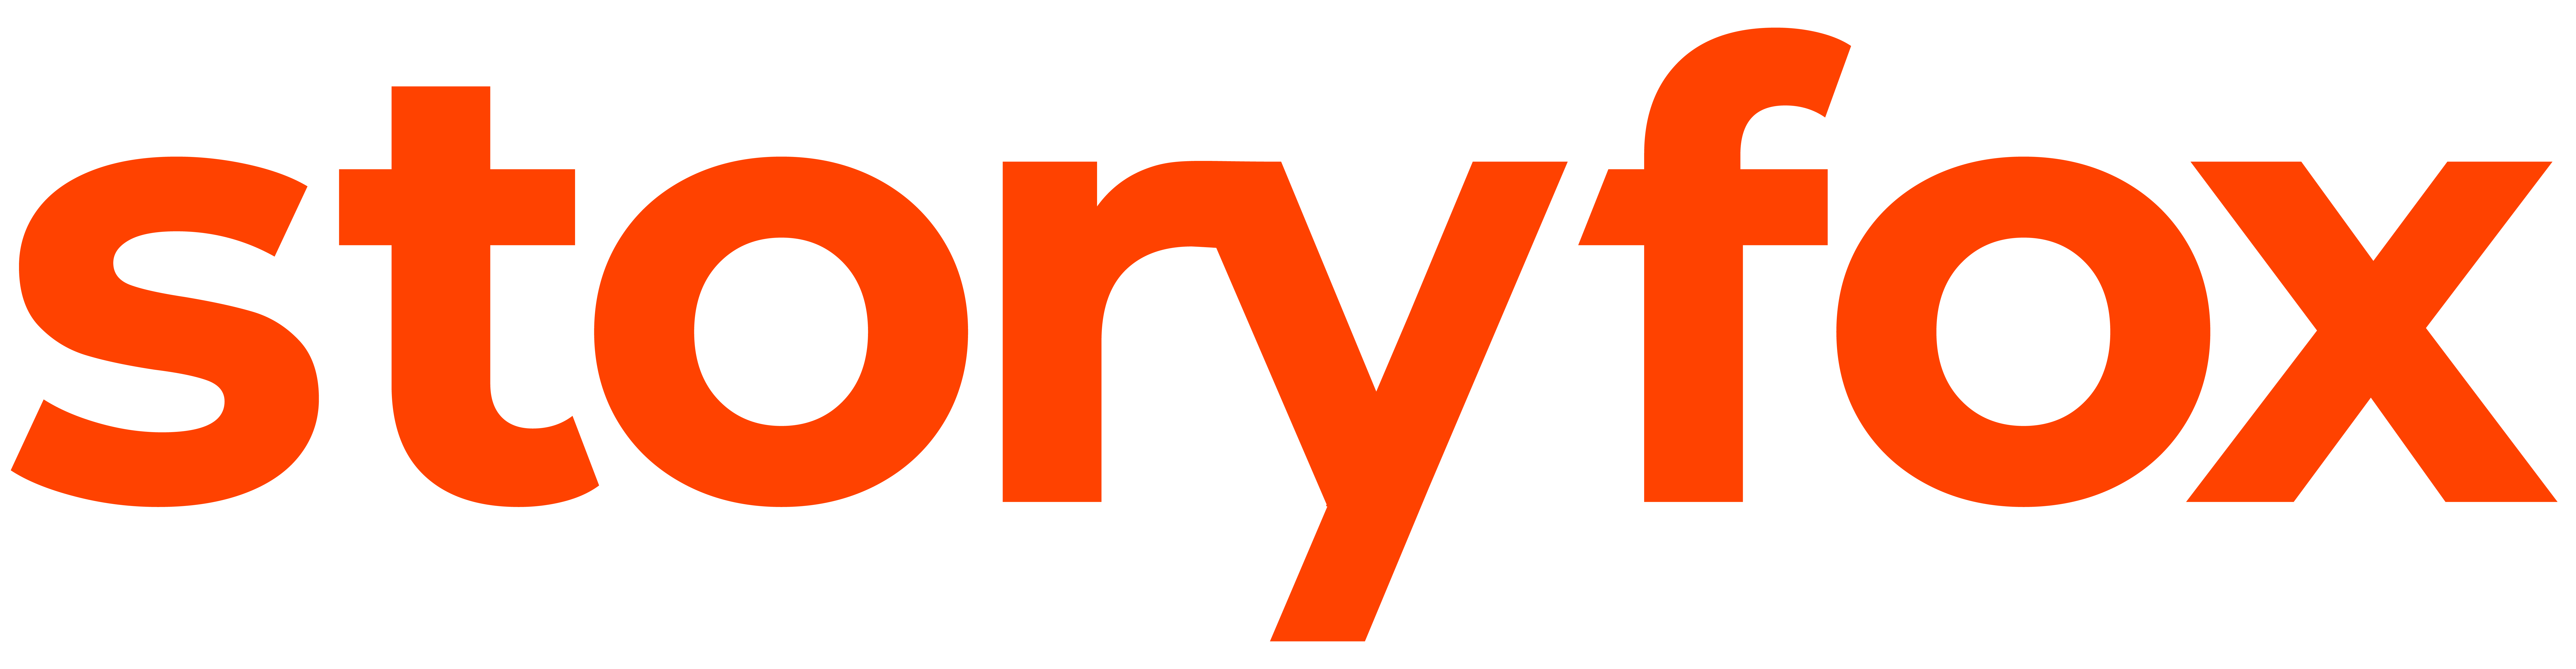 storyfox-logo-2021-site-01-1